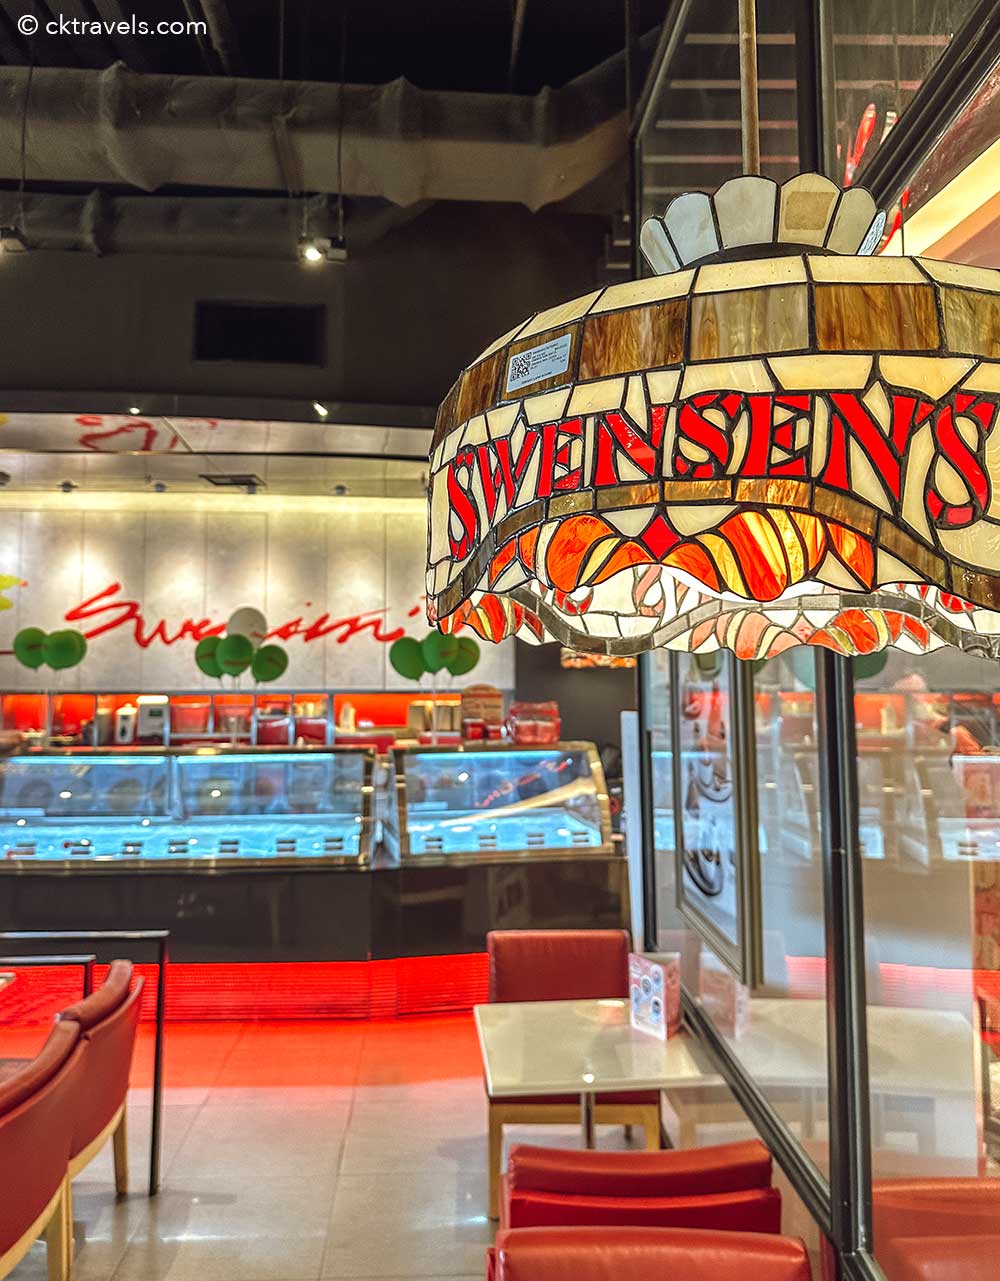 Swensen's Ice cream dessert shop Thailand